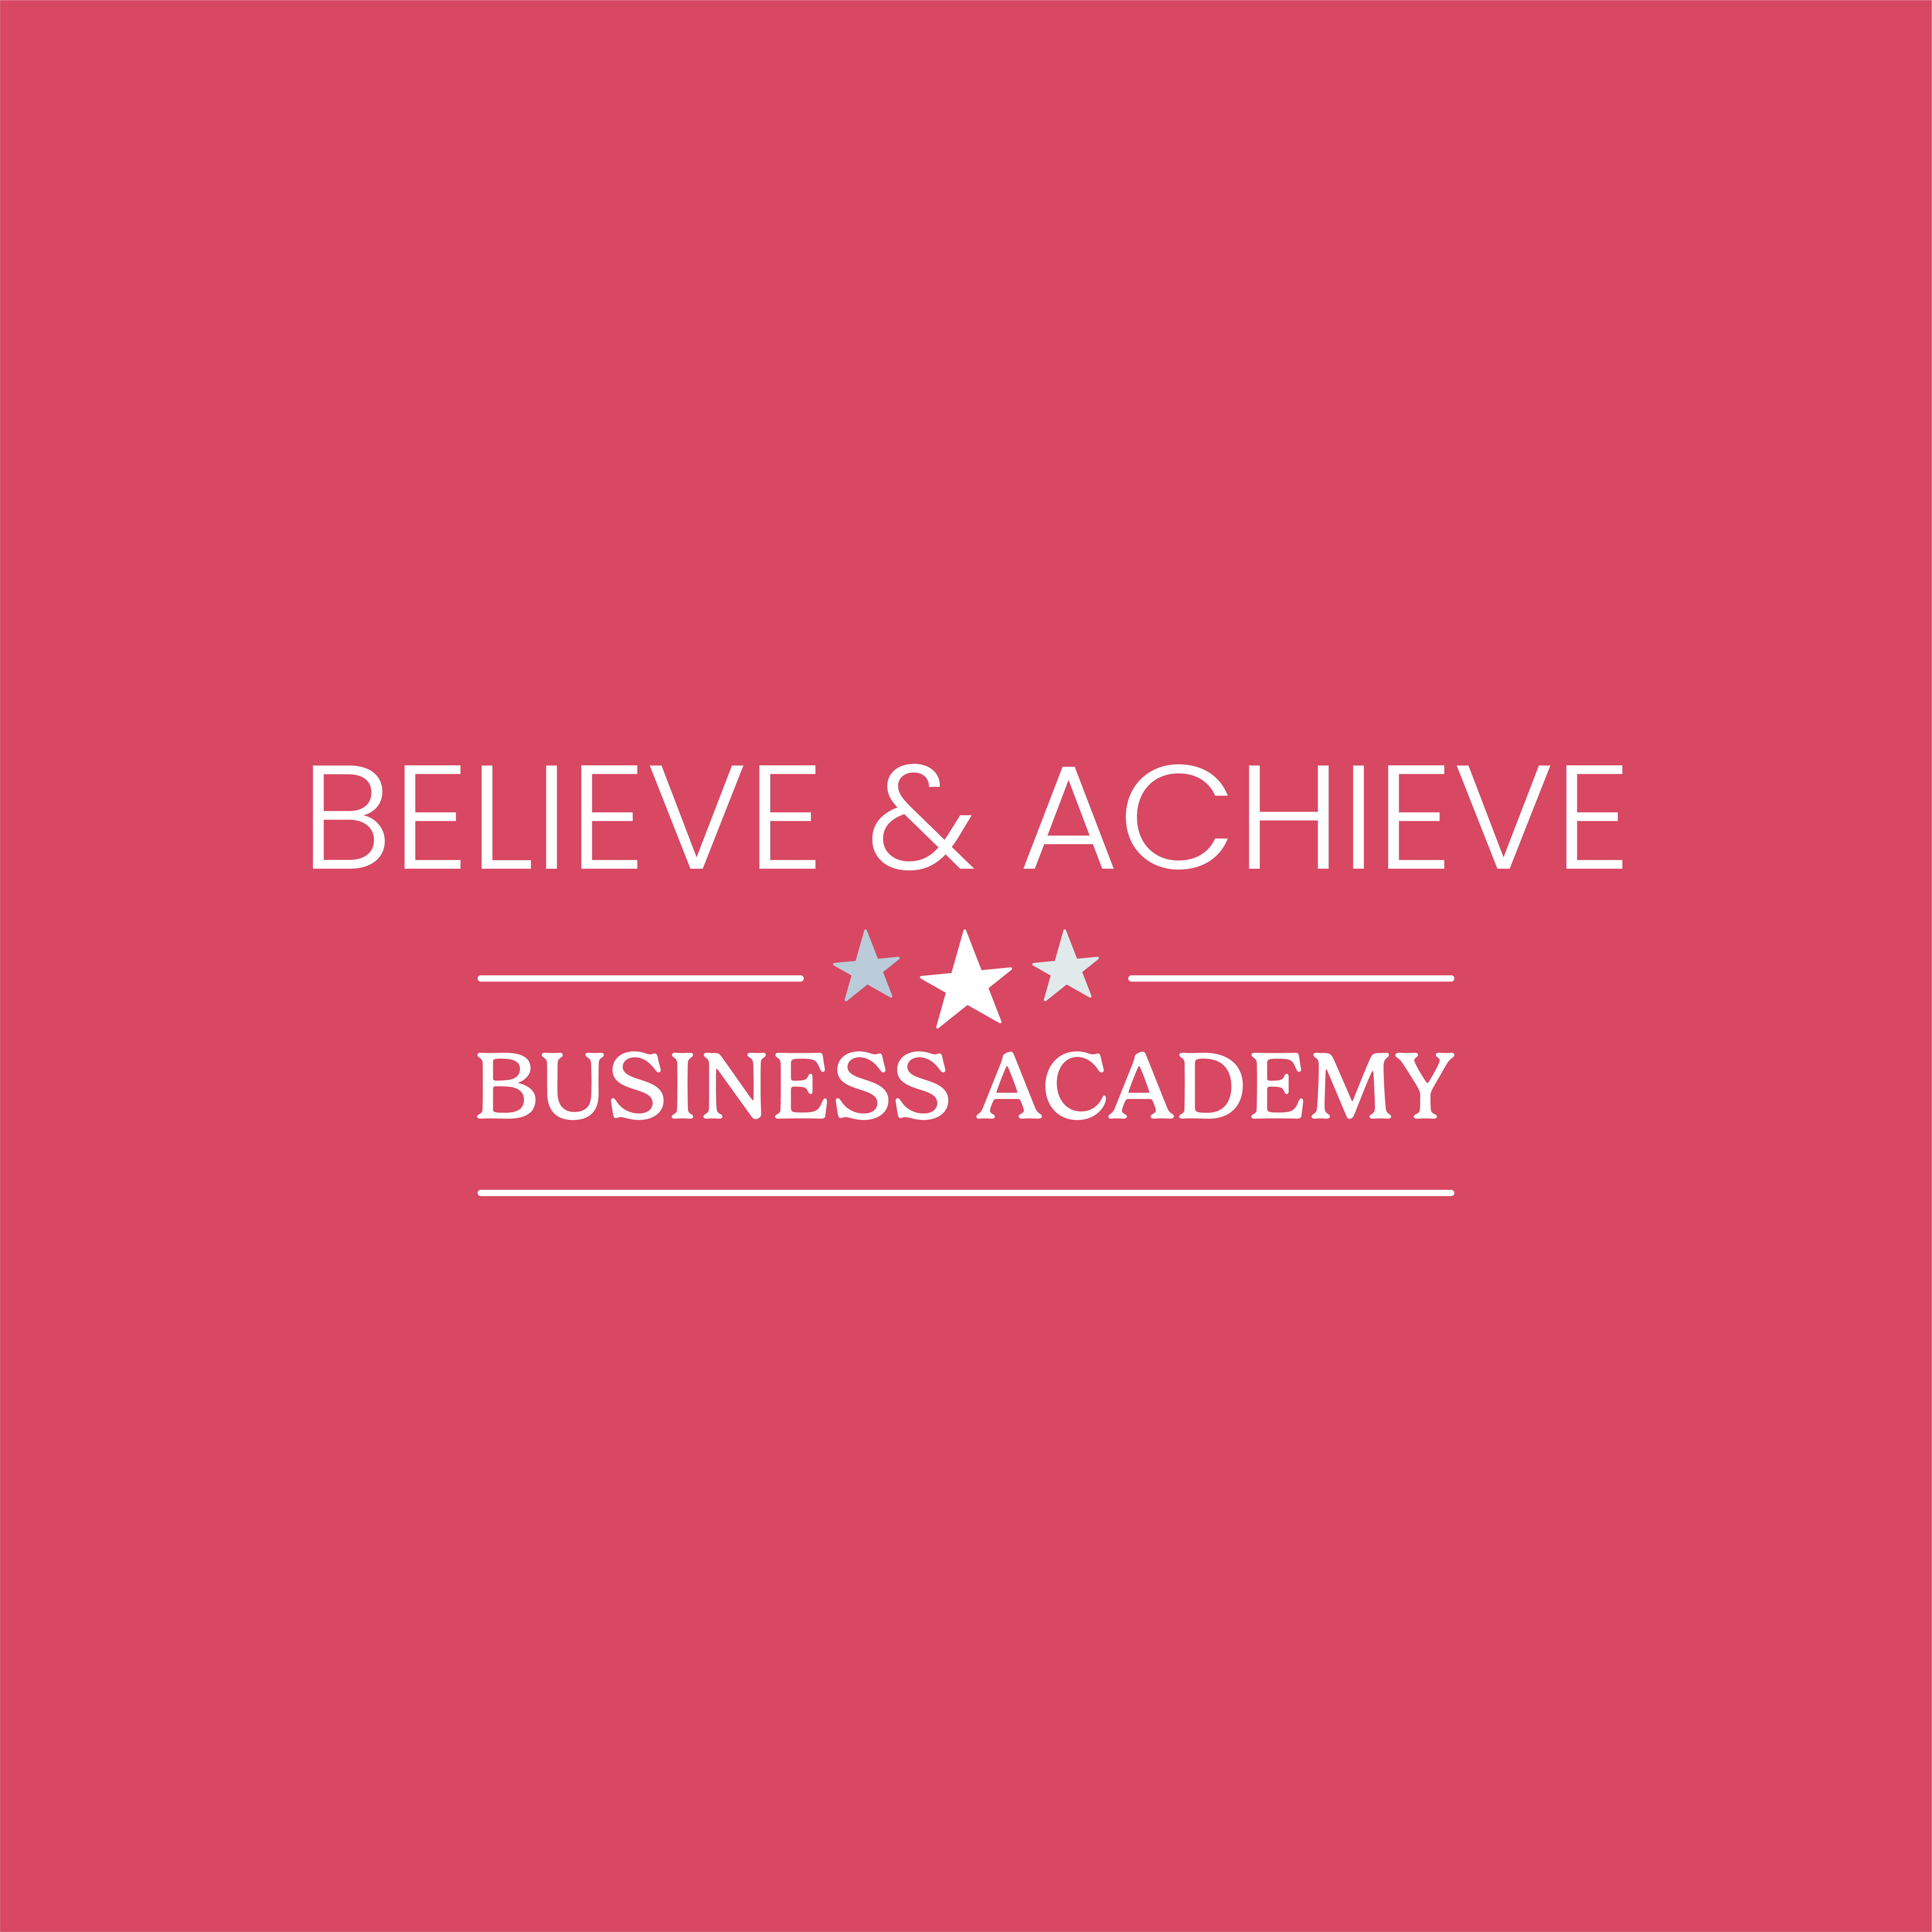 Believe & Achieve Business Academy logo